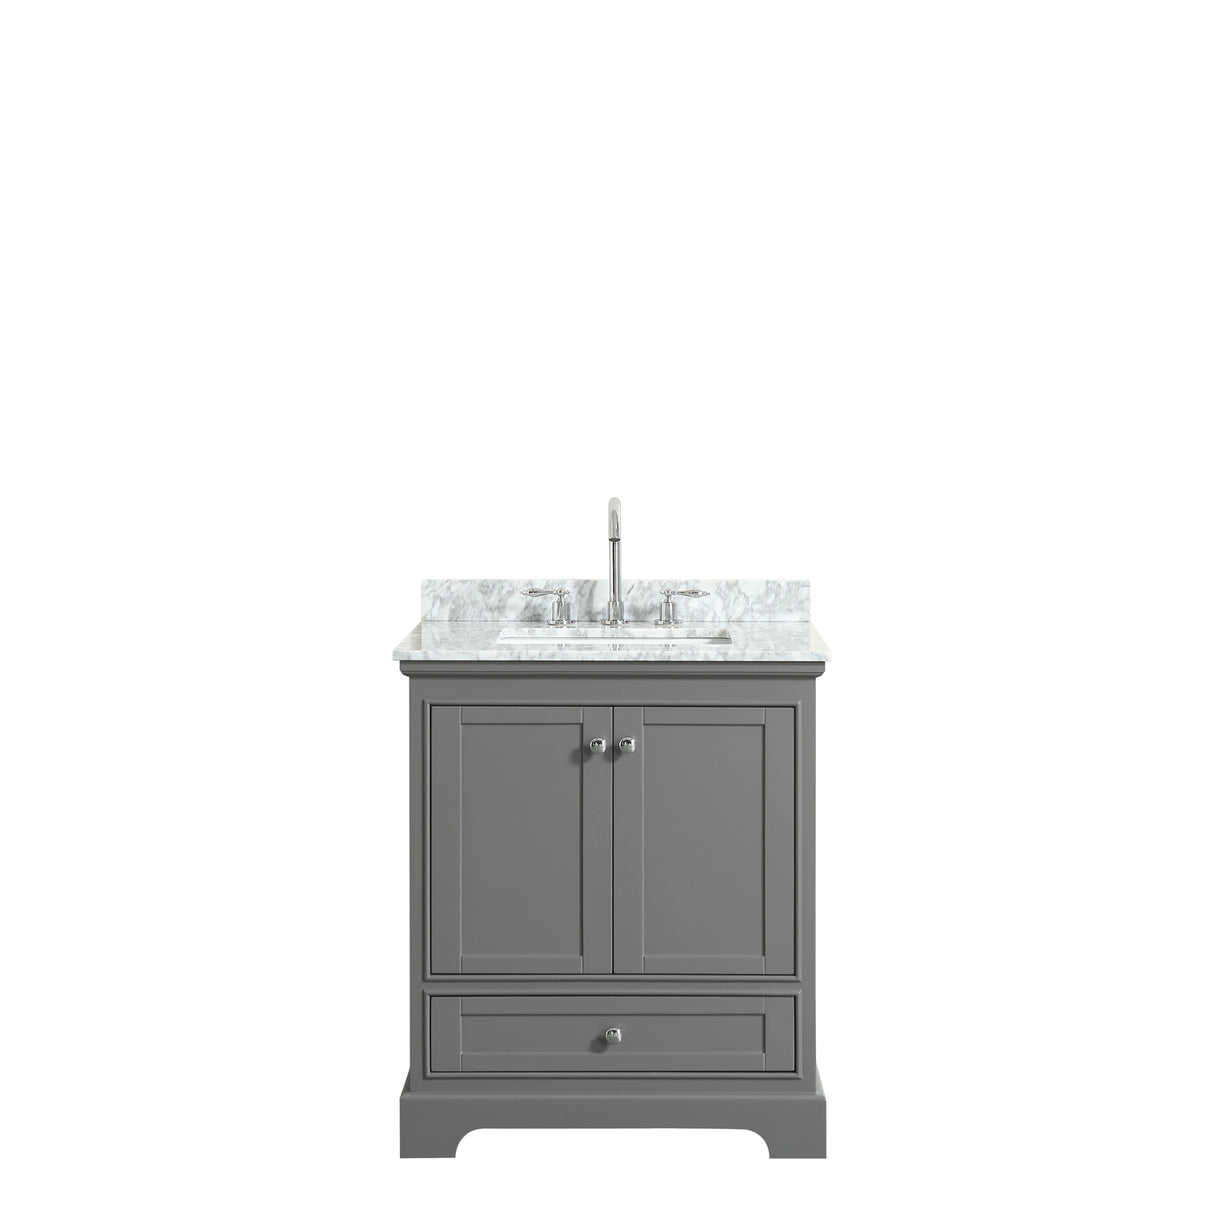 Deborah 30 Inch Single Bathroom Vanity in Dark Gray White Carrara Marble Countertop Undermount Square Sink and No Mirror